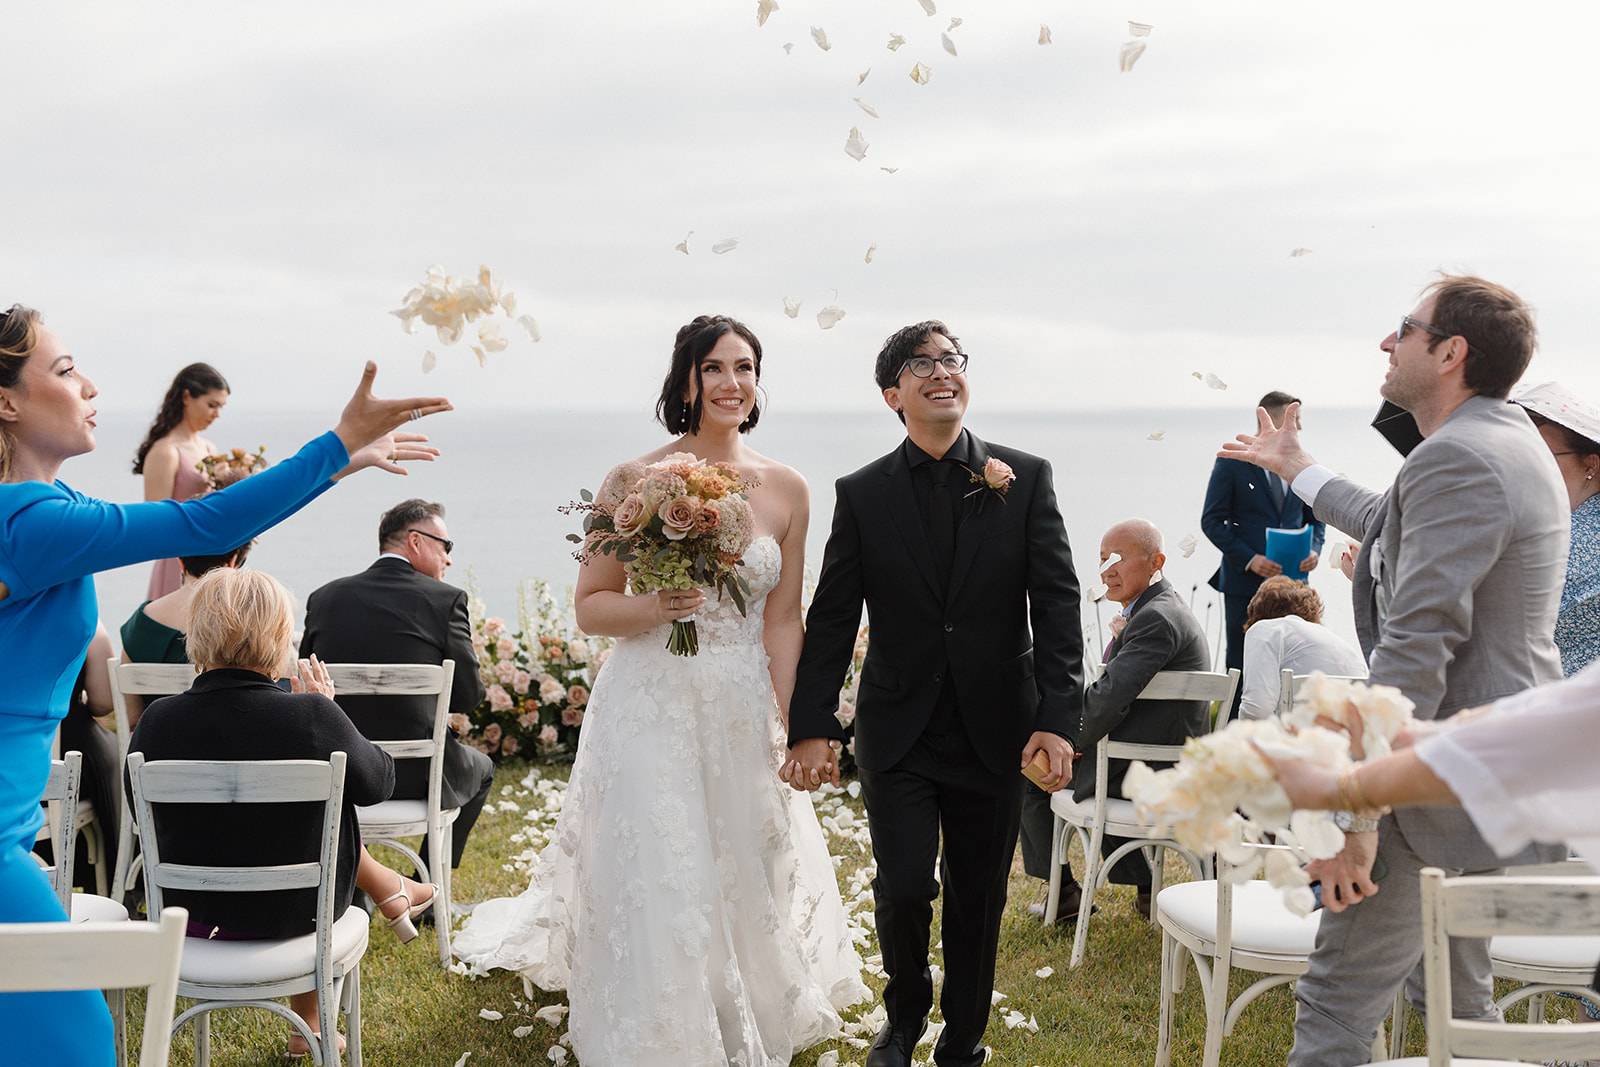 Intimate backyard wedding in Malibu California